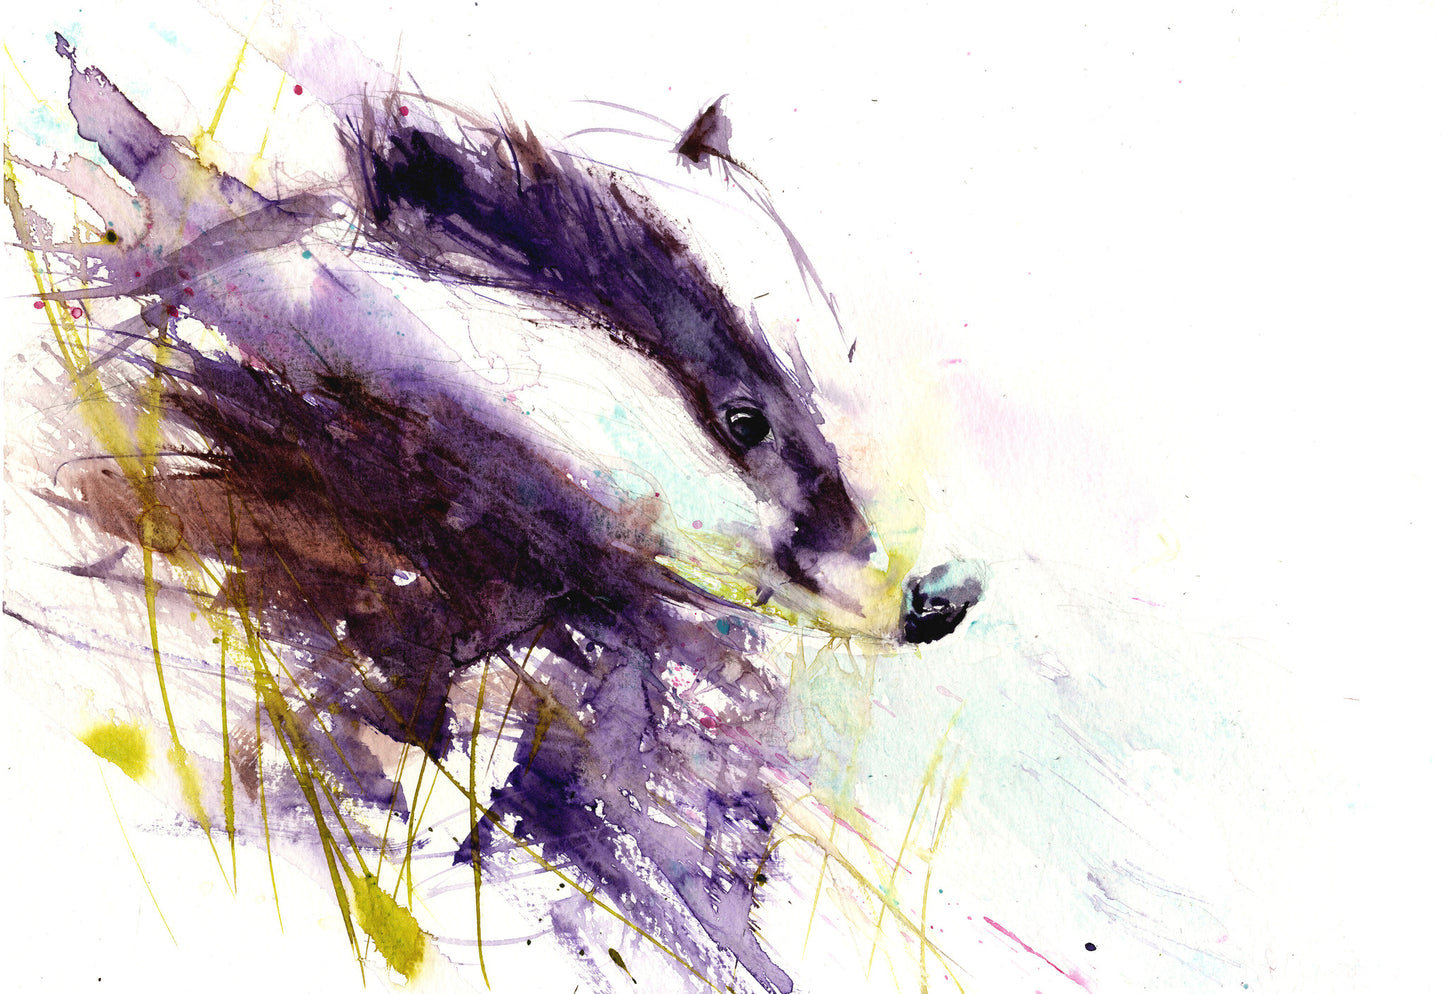 signed limited edition print - Badger - Jen Buckley Art limited edition animal art prints